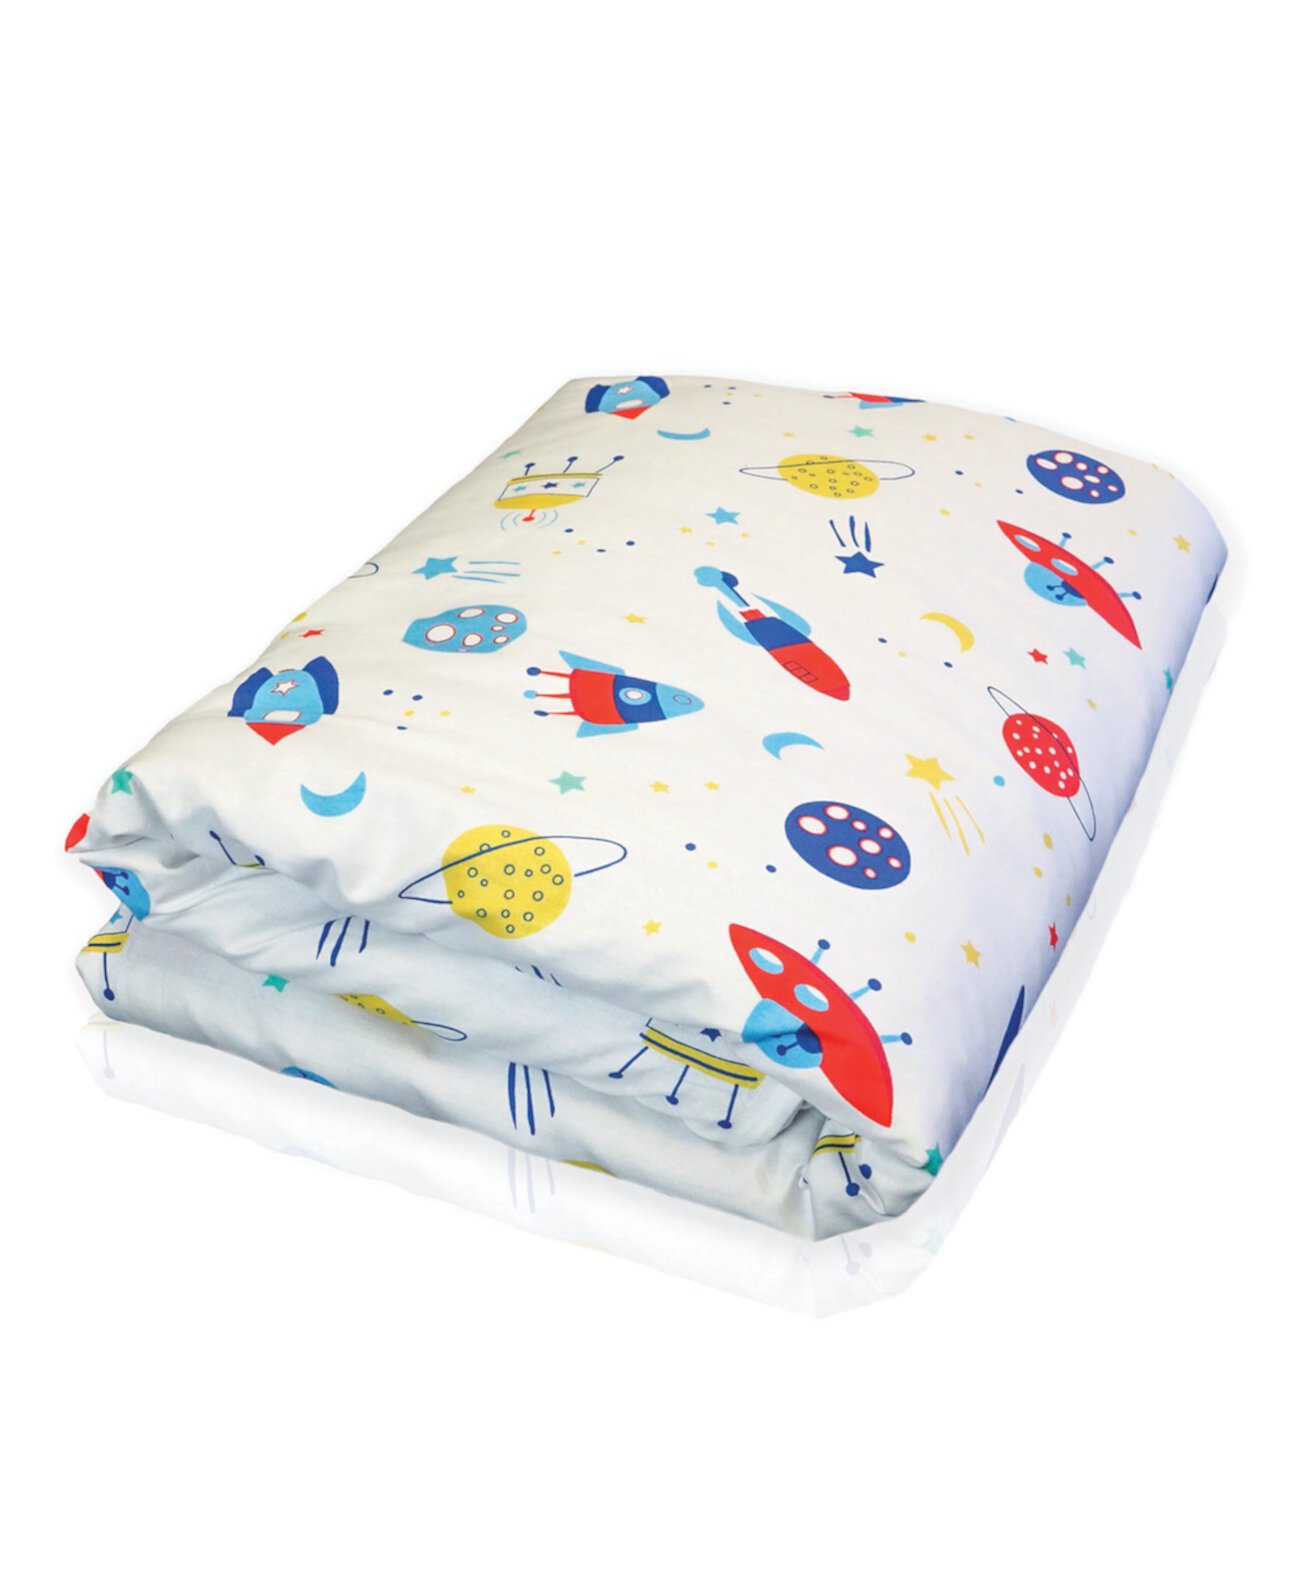 Детское одеяло - космический дизайн, 50 x 60 дюймов Hush